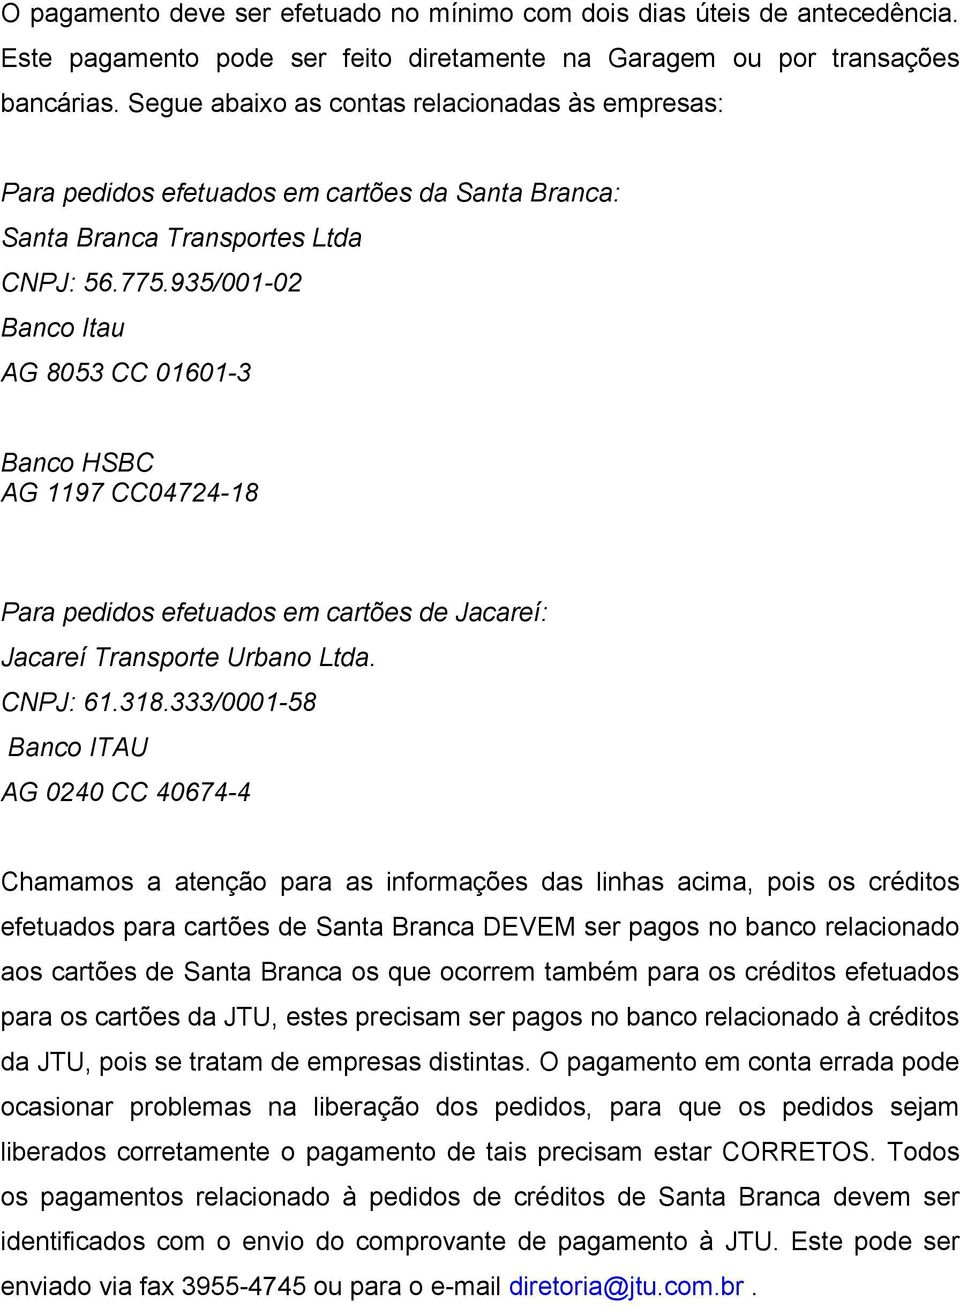 935/001-02 Banco Itau AG 8053 CC 01601-3 Banco HSBC AG 1197 CC04724-18 Para pedidos efetuados em cartões de Jacareí: Jacareí Transporte Urbano Ltda. CNPJ: 61.318.